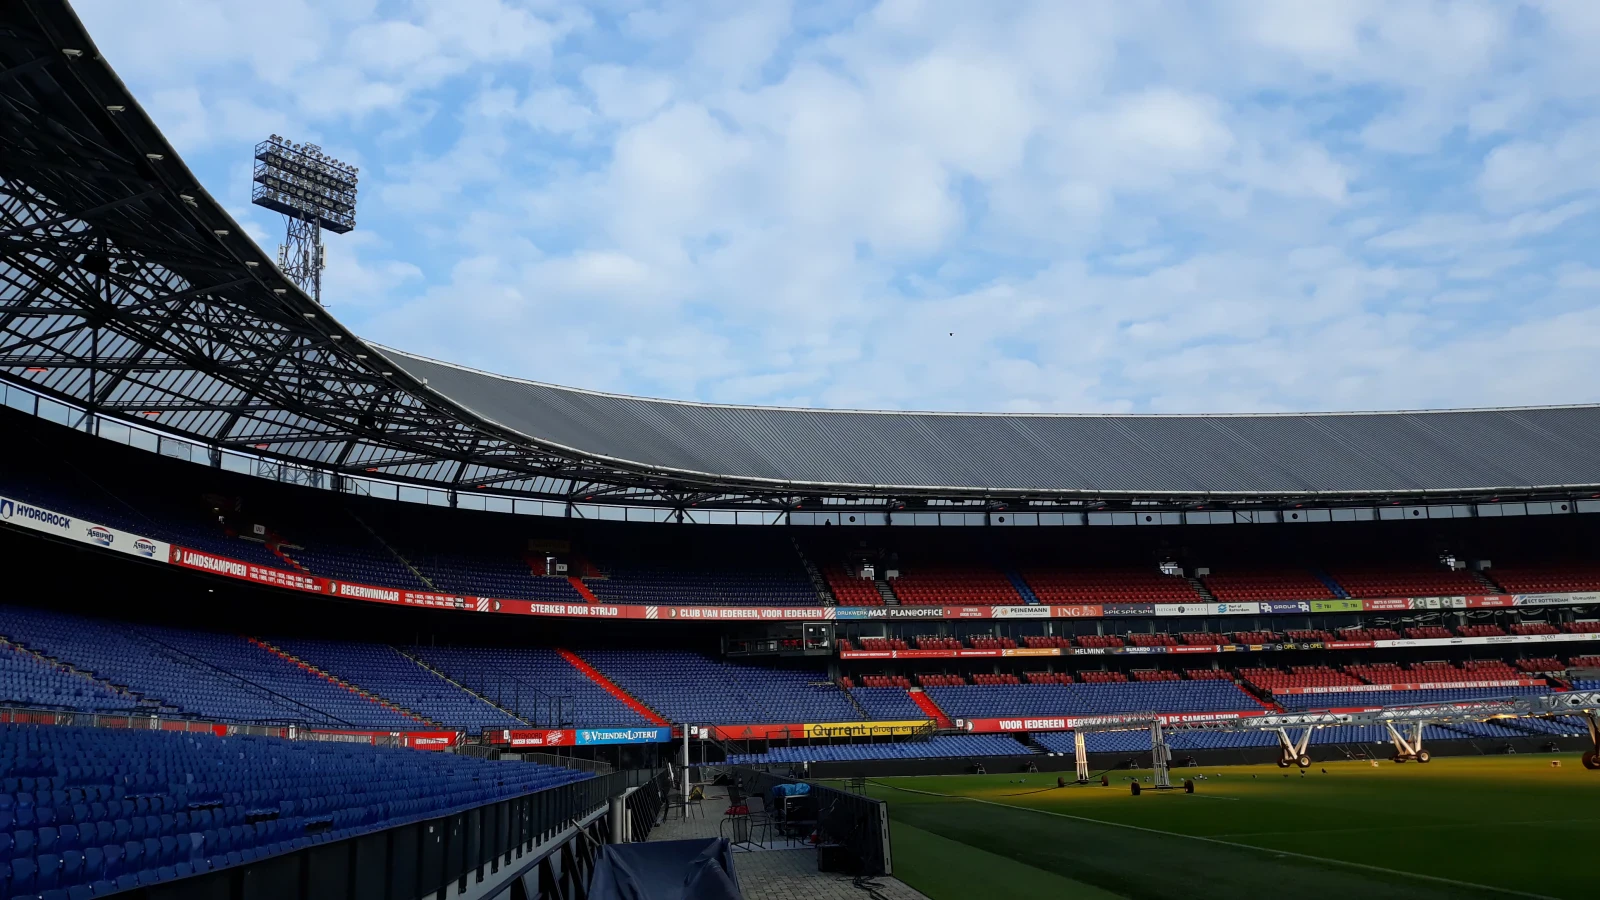 Klassiekermaand: 'Moet Feyenoord zich aanpassen aan de tegenstanders'